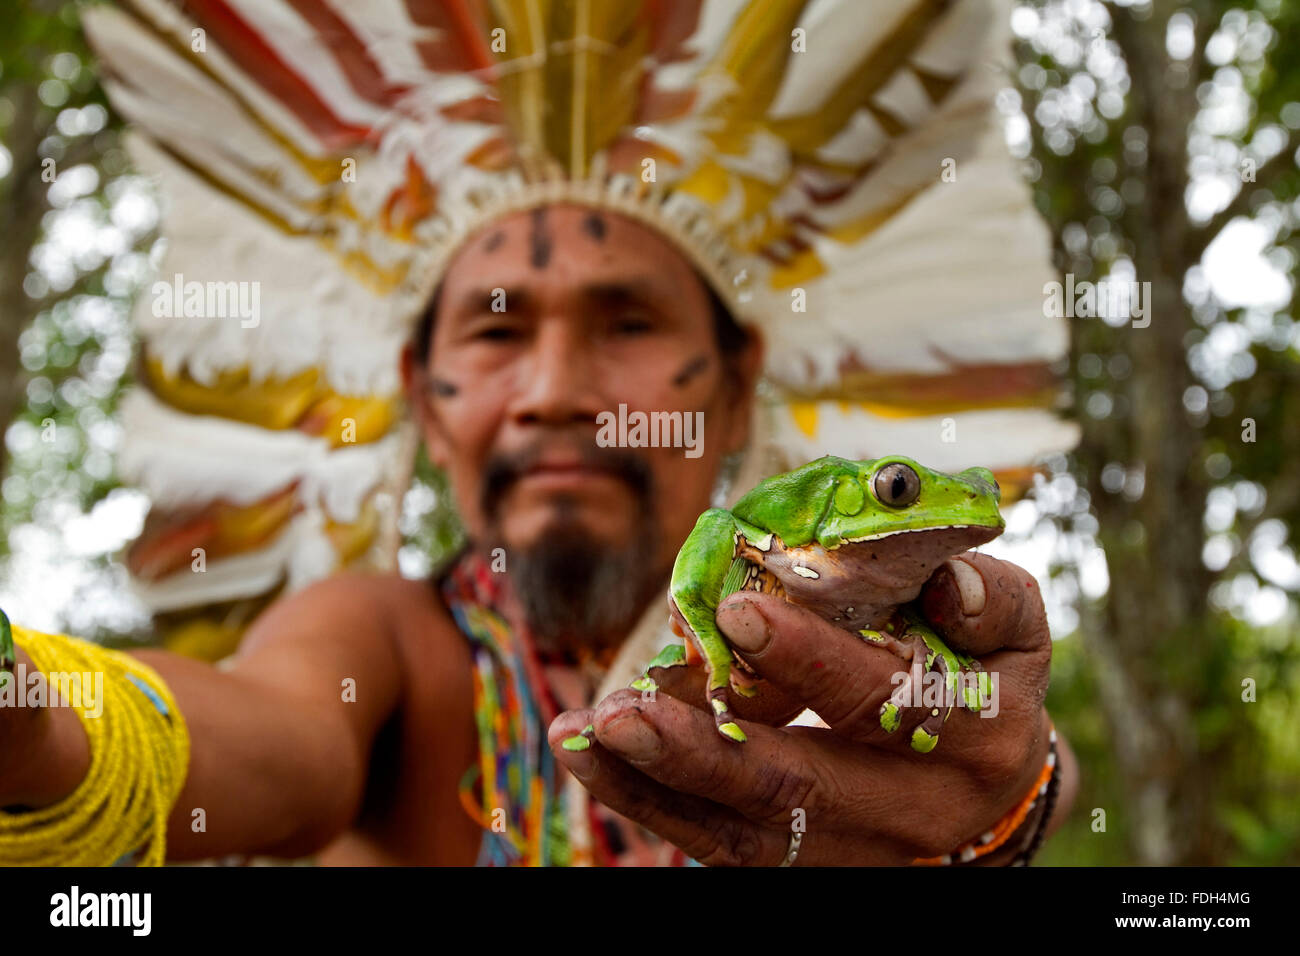 Shaman with frogs to elaborate Kambo medicine. Amazon. Alto jurua. Croa, Brazil Stock Photo